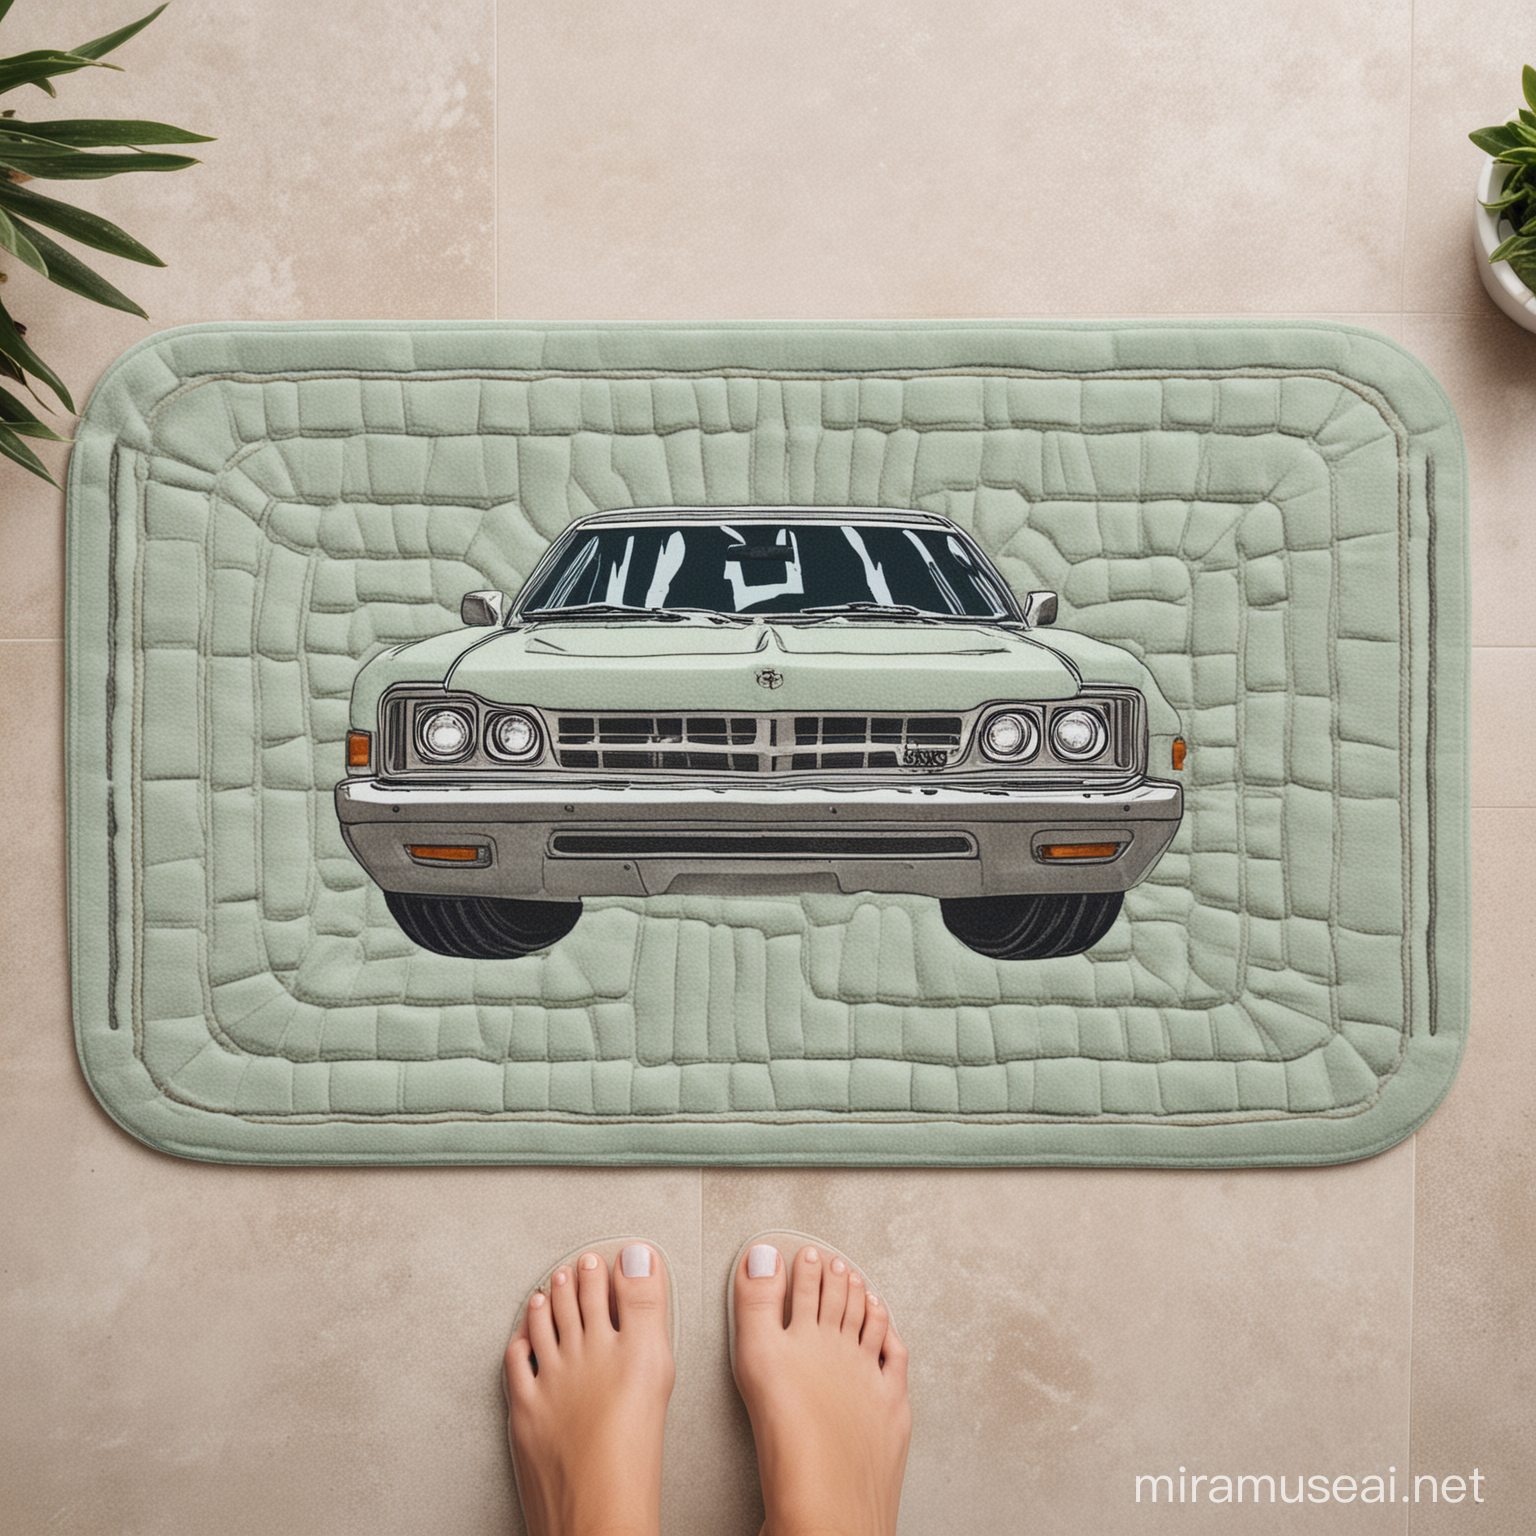 UTE/Funny bath mat design
